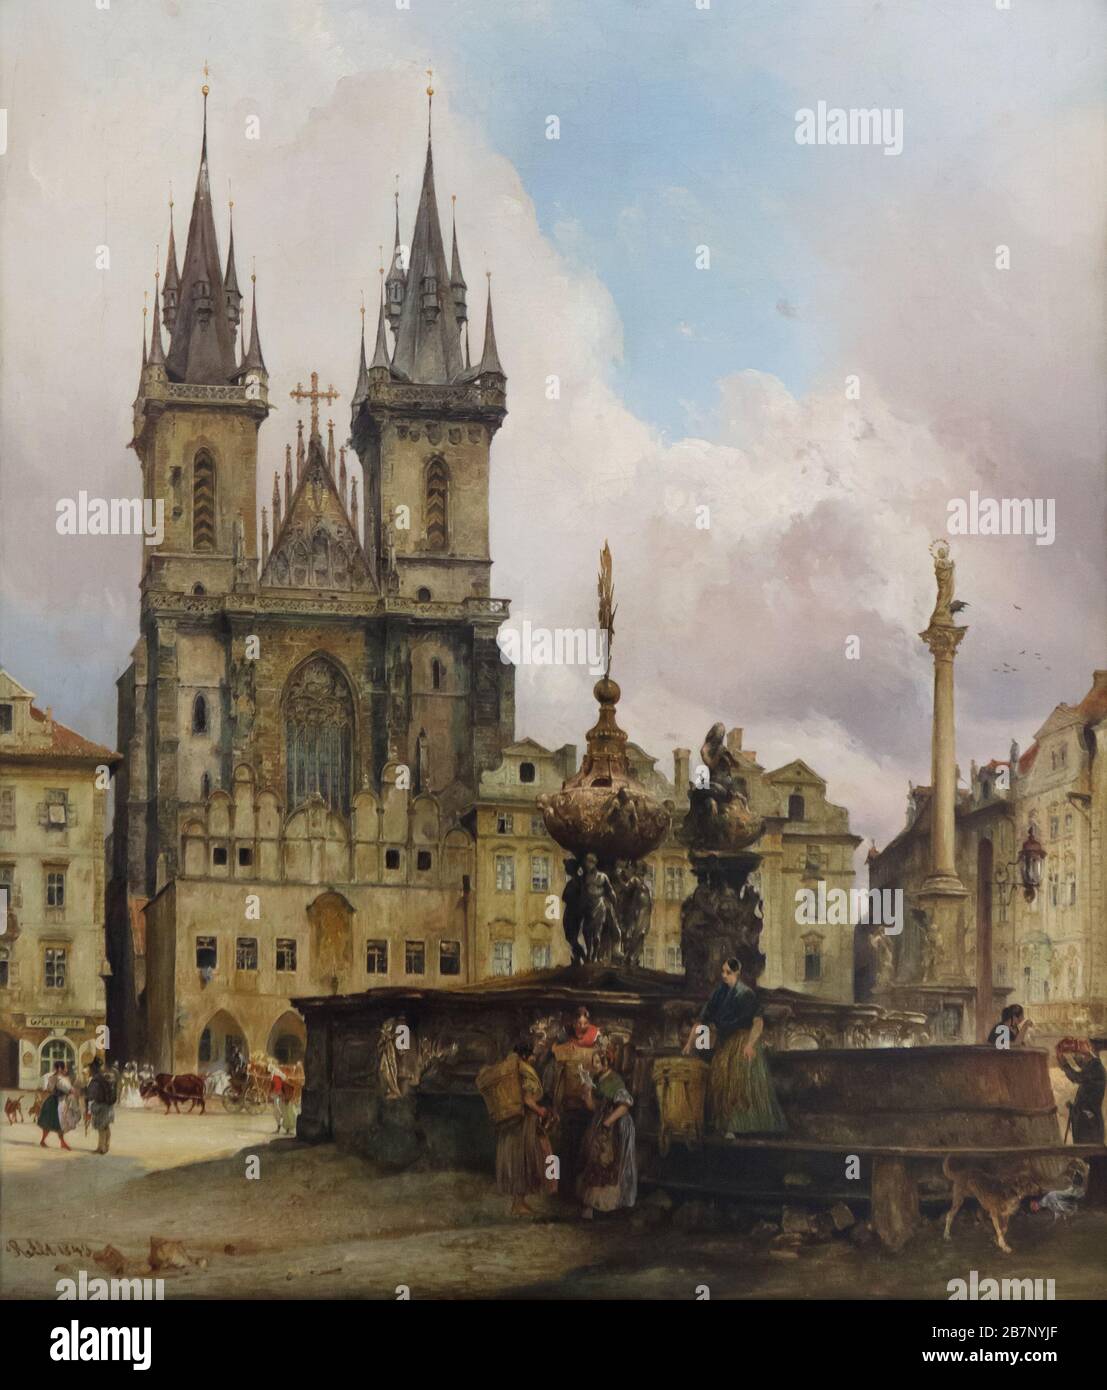 Peinture "Eglise Týn avec la fontaine de Krocín" par le peintre autrichien Rudolf von Alt (1843) lors de l'exposition permanente de la Galerie nationale (galerie Národní) dans la Veletržní palác (Palais des Expositions) à Prague, République tchèque. L'église de Týn (Týnský chrám) et la fontaine de Krocín (Krocínova kašna) sur la place de la Vieille Ville (Staroměstské náměstí) à Prague, l'Empire autrichien (aujourd'hui la République tchèque) sont représentés dans la paining. La colonne Marian (Mariánský sloup) est également vue en arrière-plan. Banque D'Images